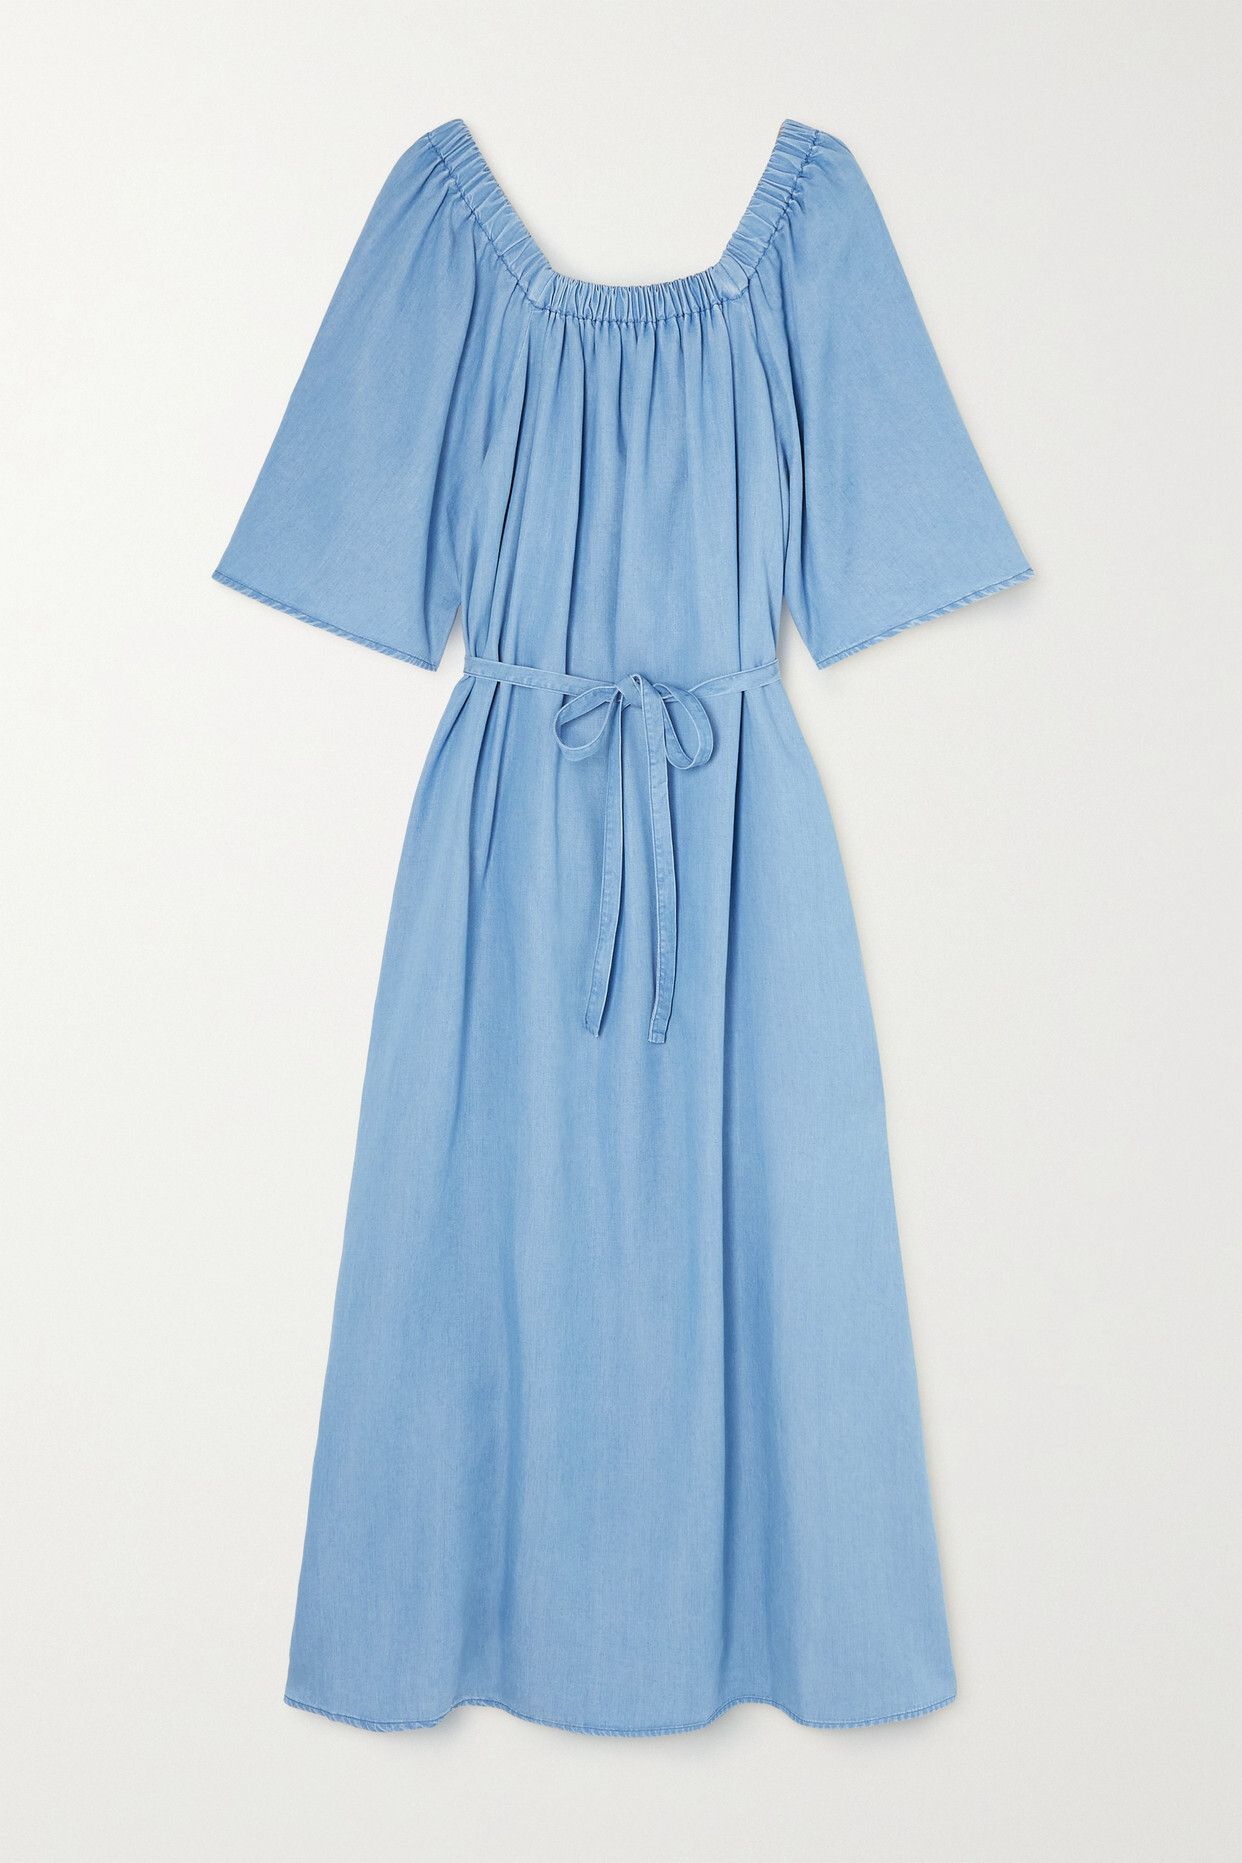 Mother of Pearl - Matilda Denim Midi Dress - Blue